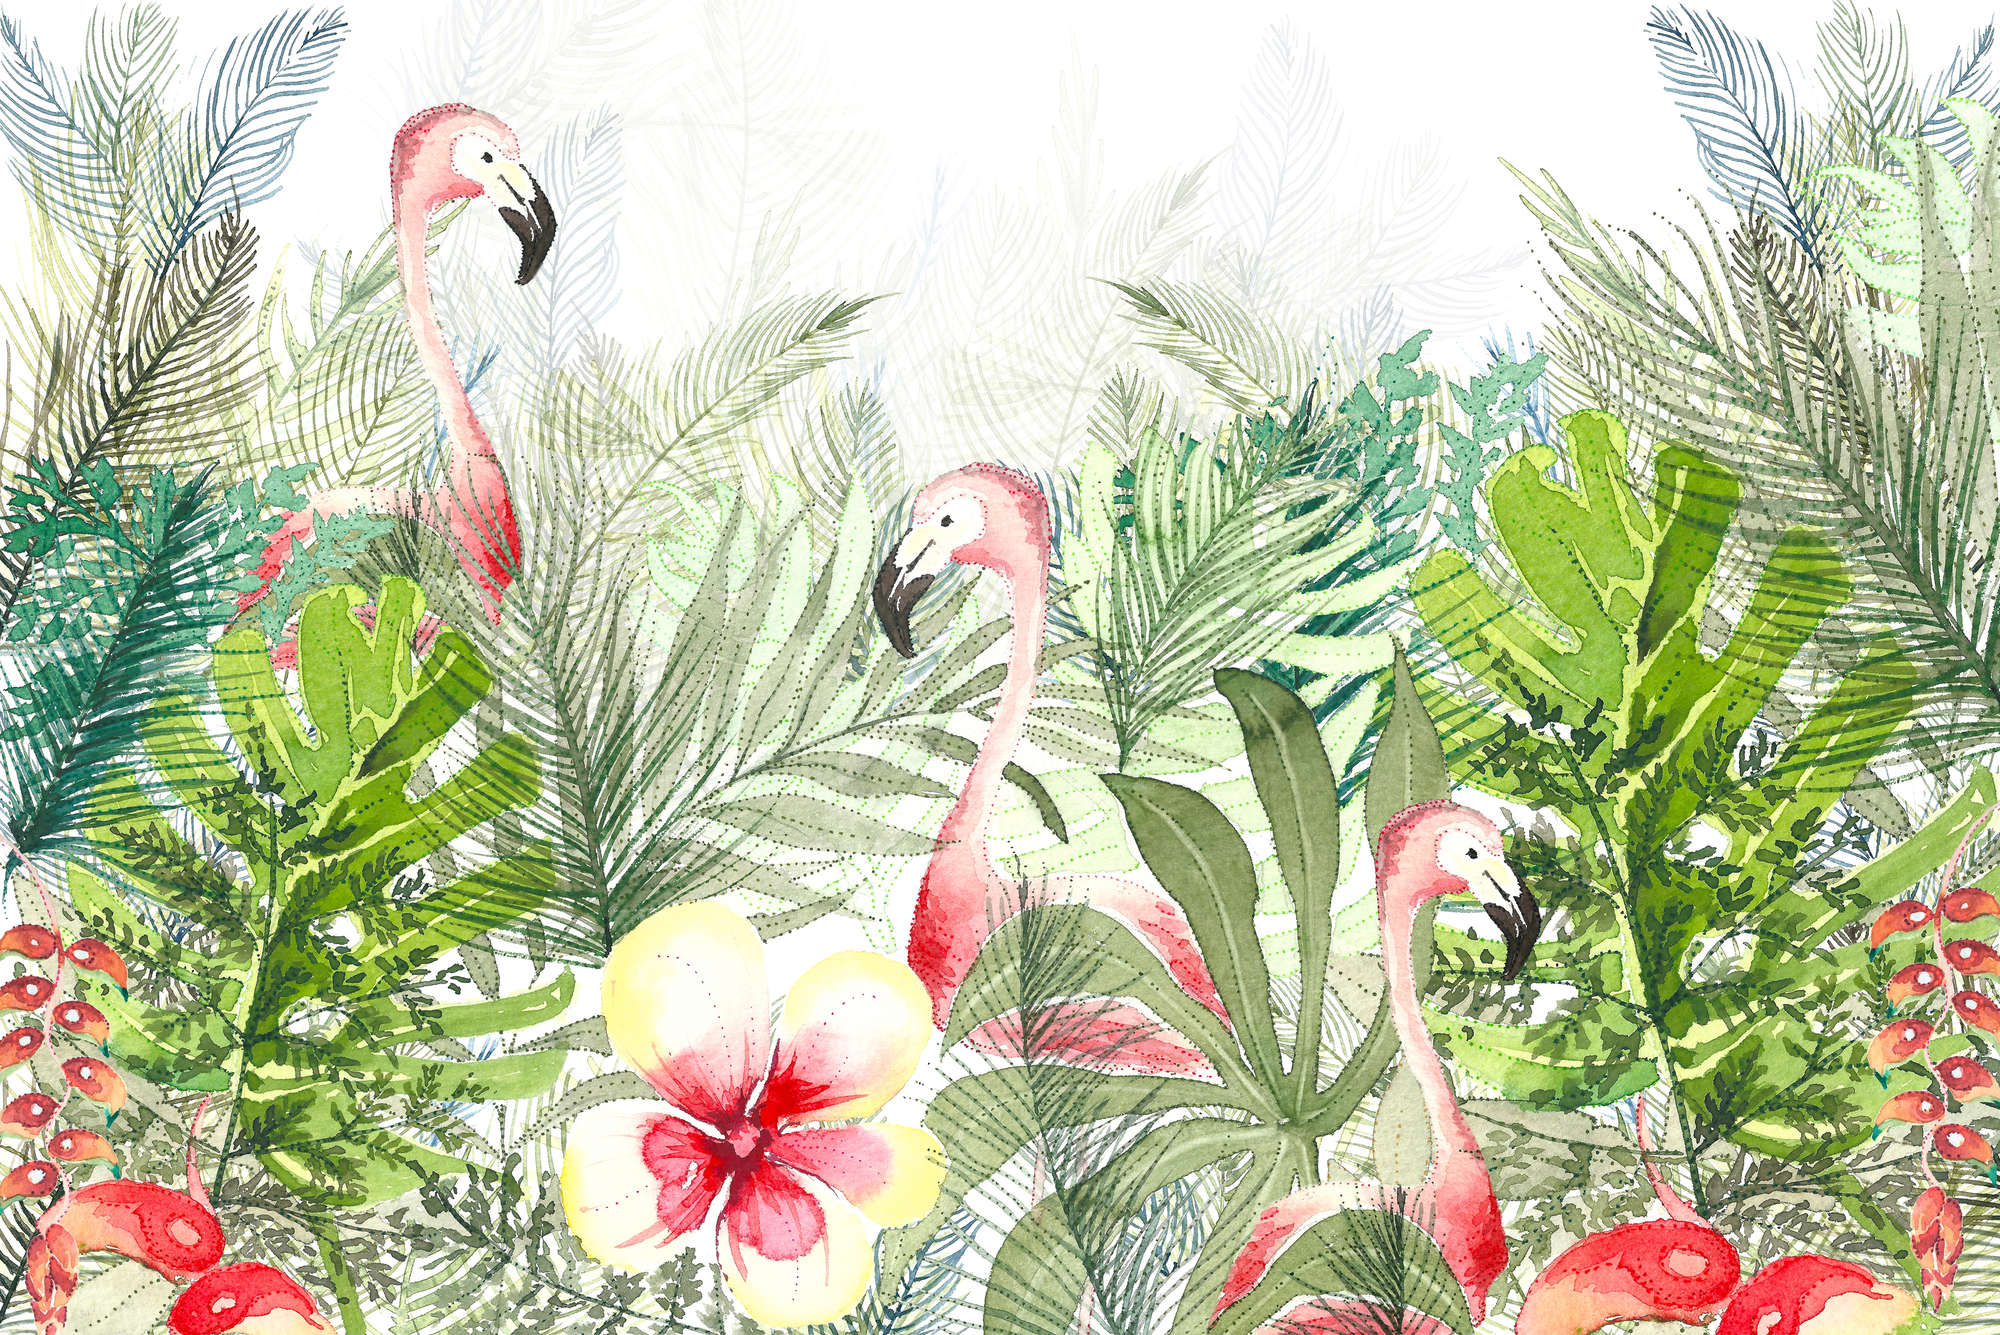             Aquarelbehang Flamingo, bladeren & bloesems op structuurvlies
        